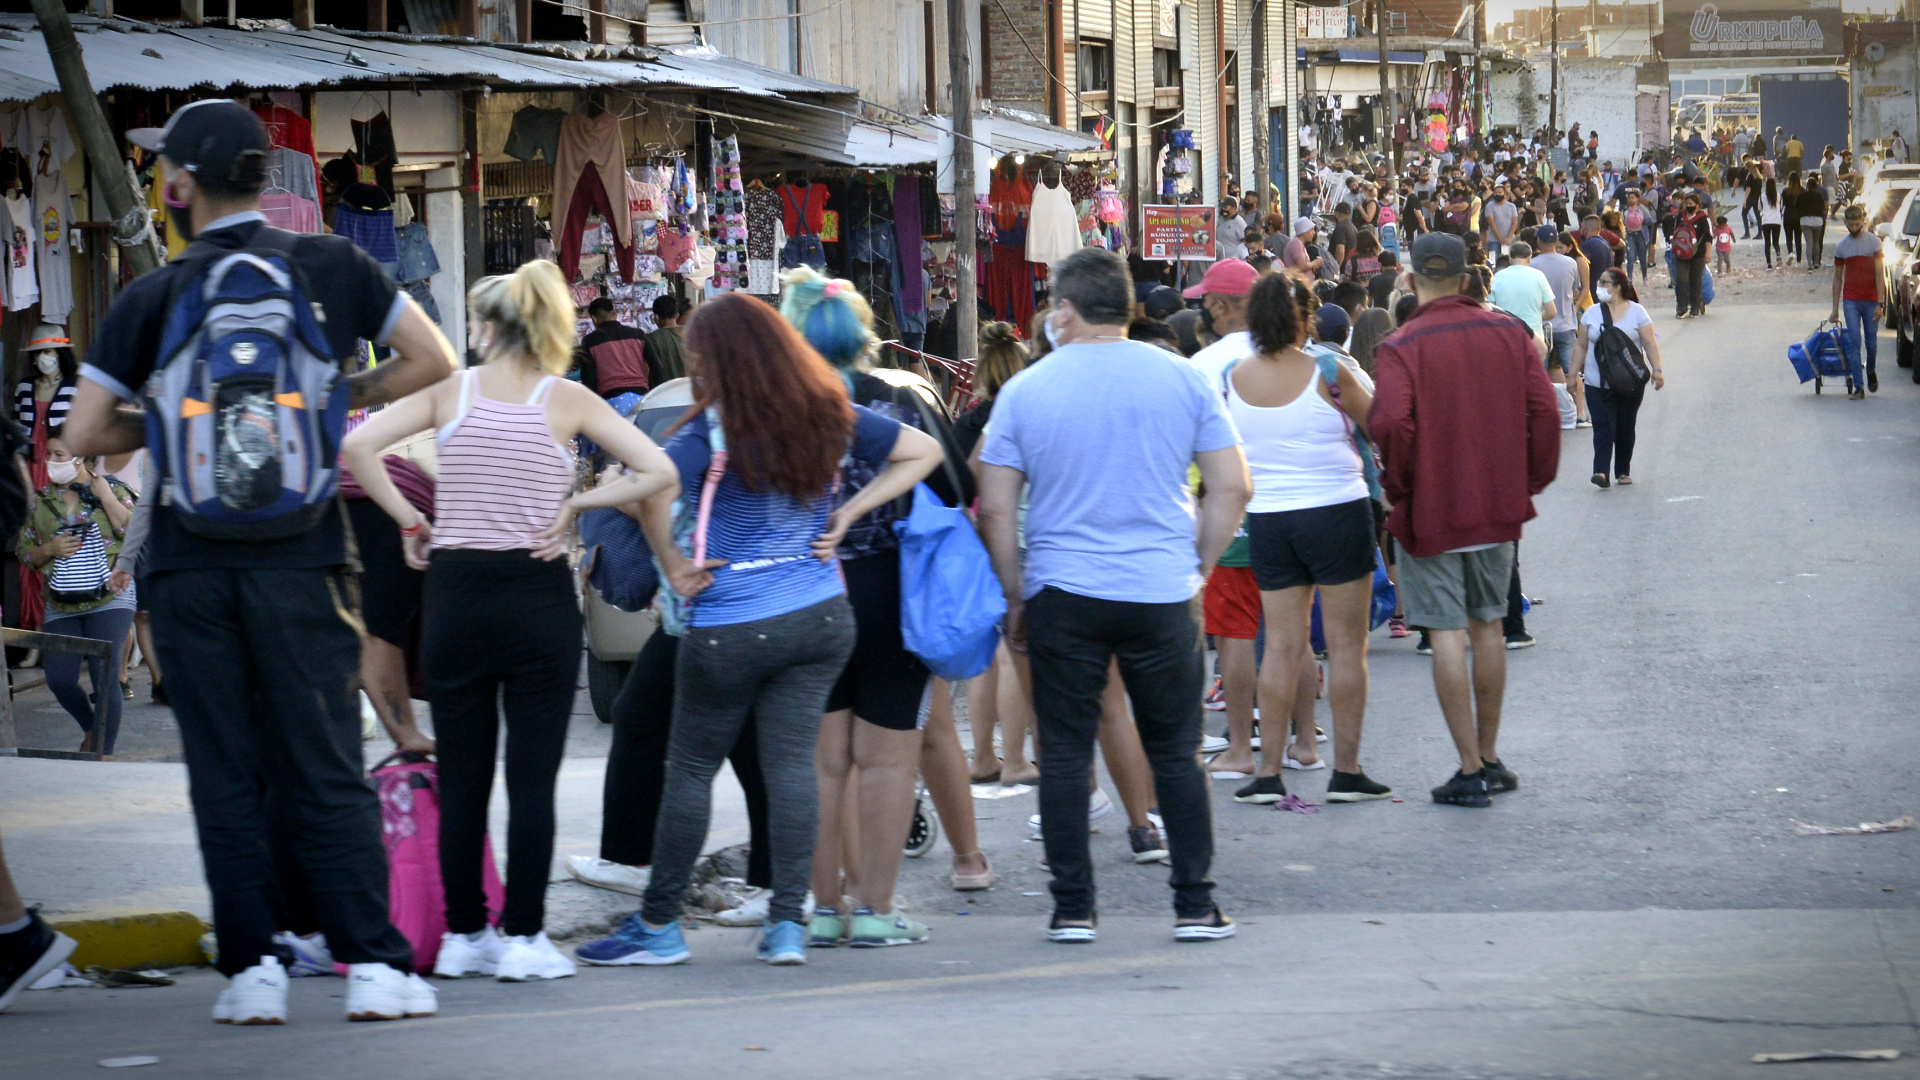 Los barras de Boca fueron condenados por múltiples delitos cometidos en la Feria de La Salada. Desde extorsión a feriantes a robos. Gustavo Gavotti